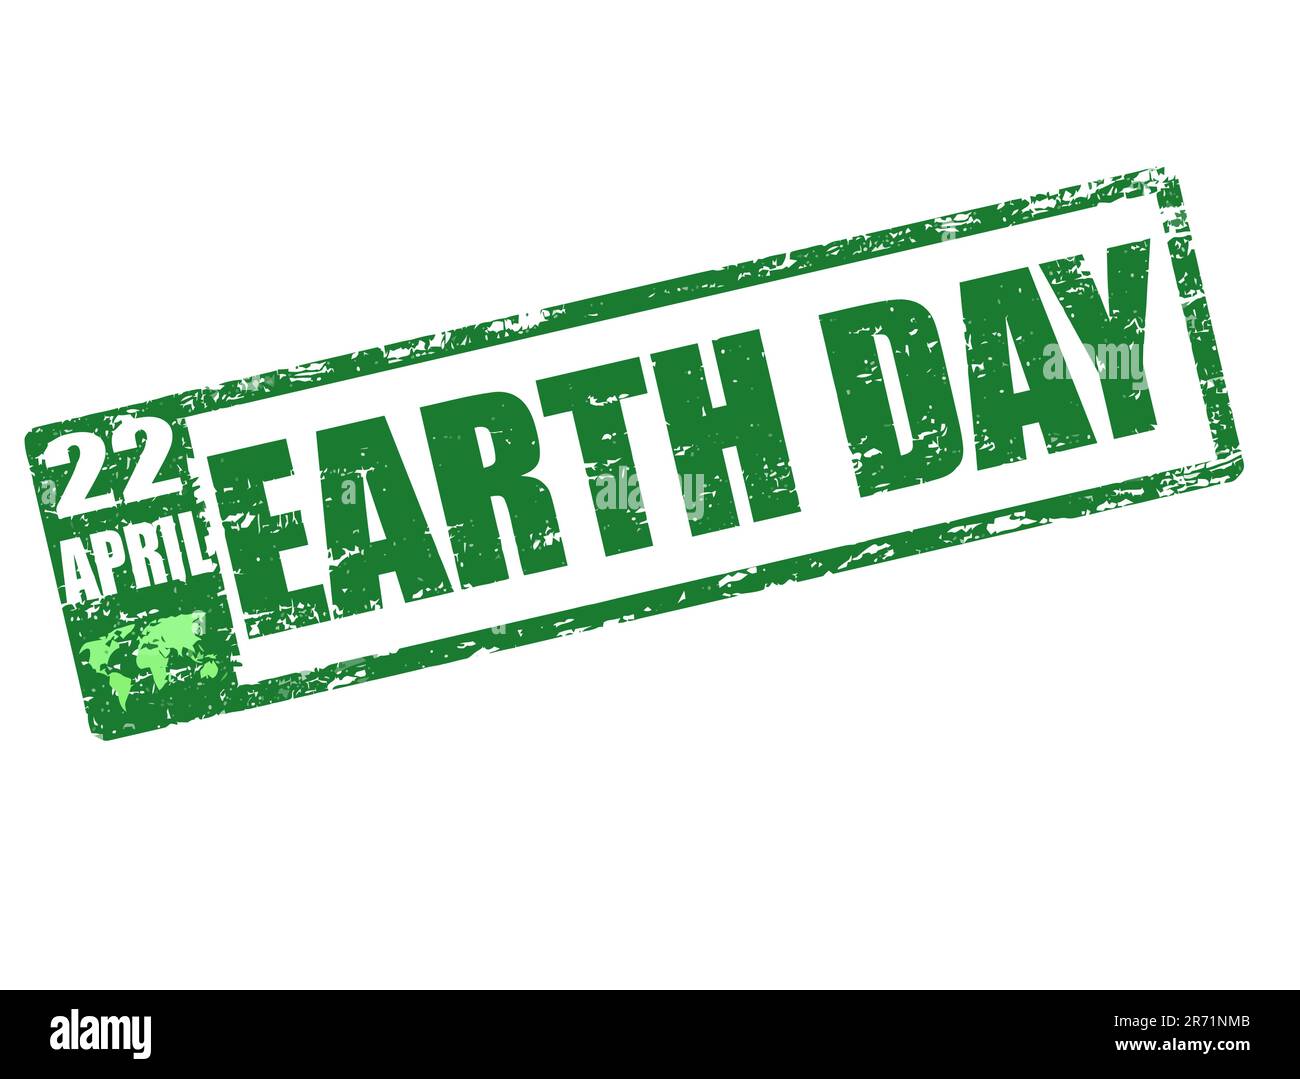 22 avril - timbre du jour de la terre Illustration de Vecteur